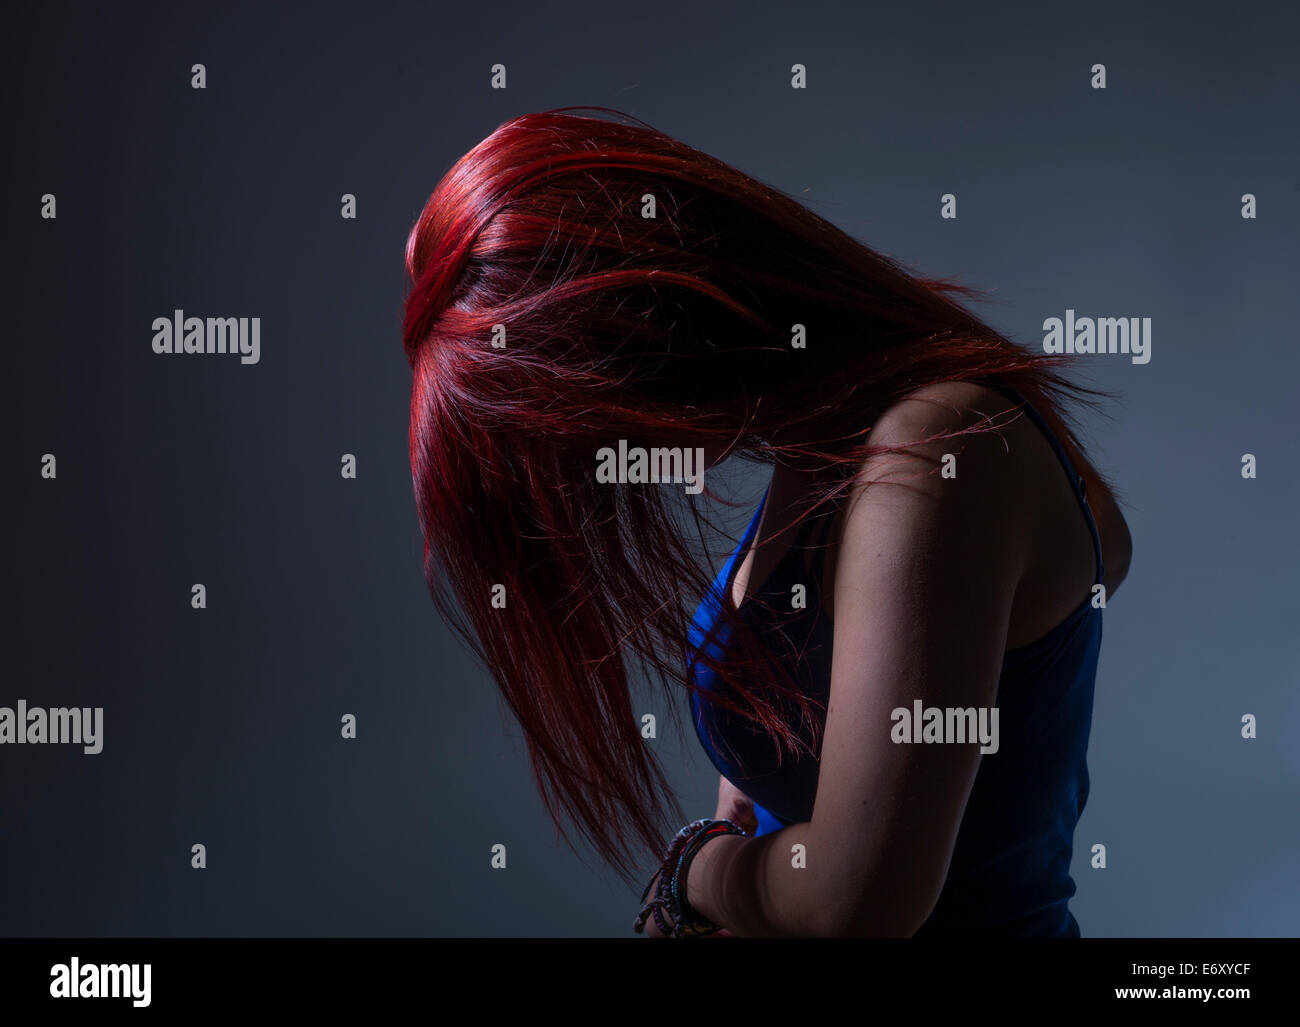 La tristezza / depressione: una giovane donna ragazza adolescente nel profilo con tinte luminose capelli rossi, la testa inchinata oscurando il suo volto, REGNO UNITO Foto Stock